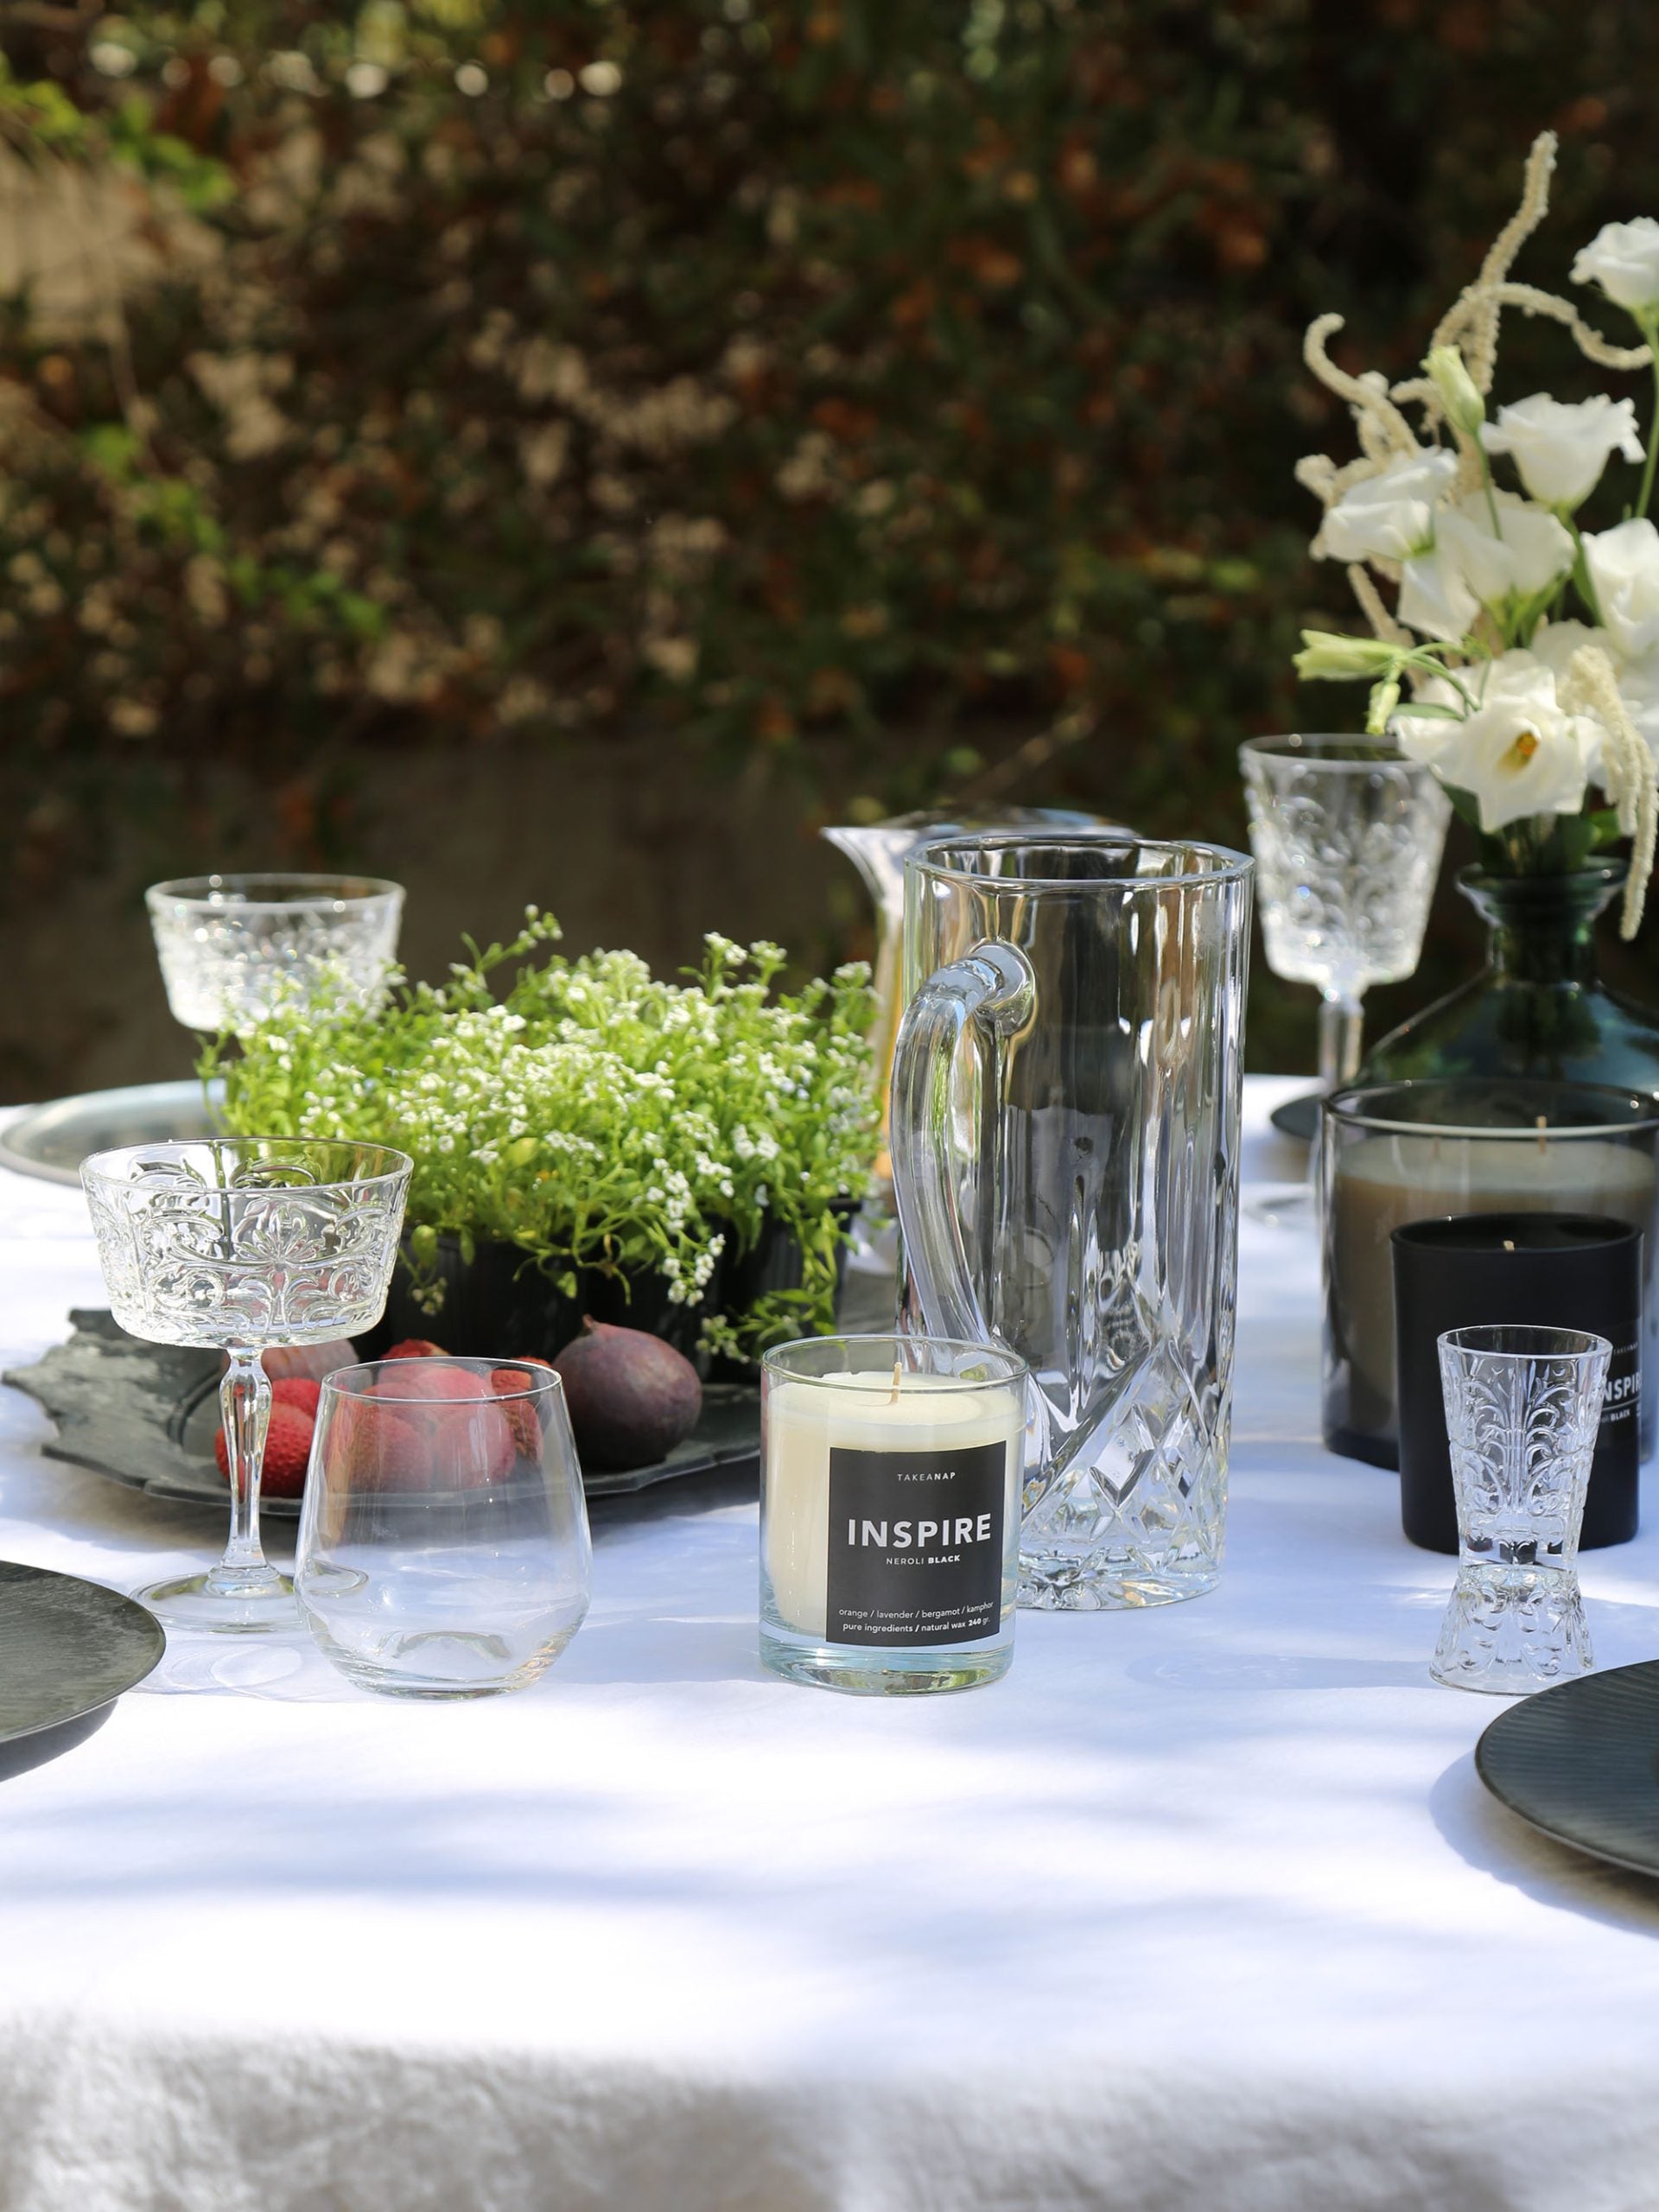 כוסות שמפניה, מים, נר ריחני, וכד מים מזכוכית על שולחן ערוך עם מפה לבנה וצלחות בחצר באור יום